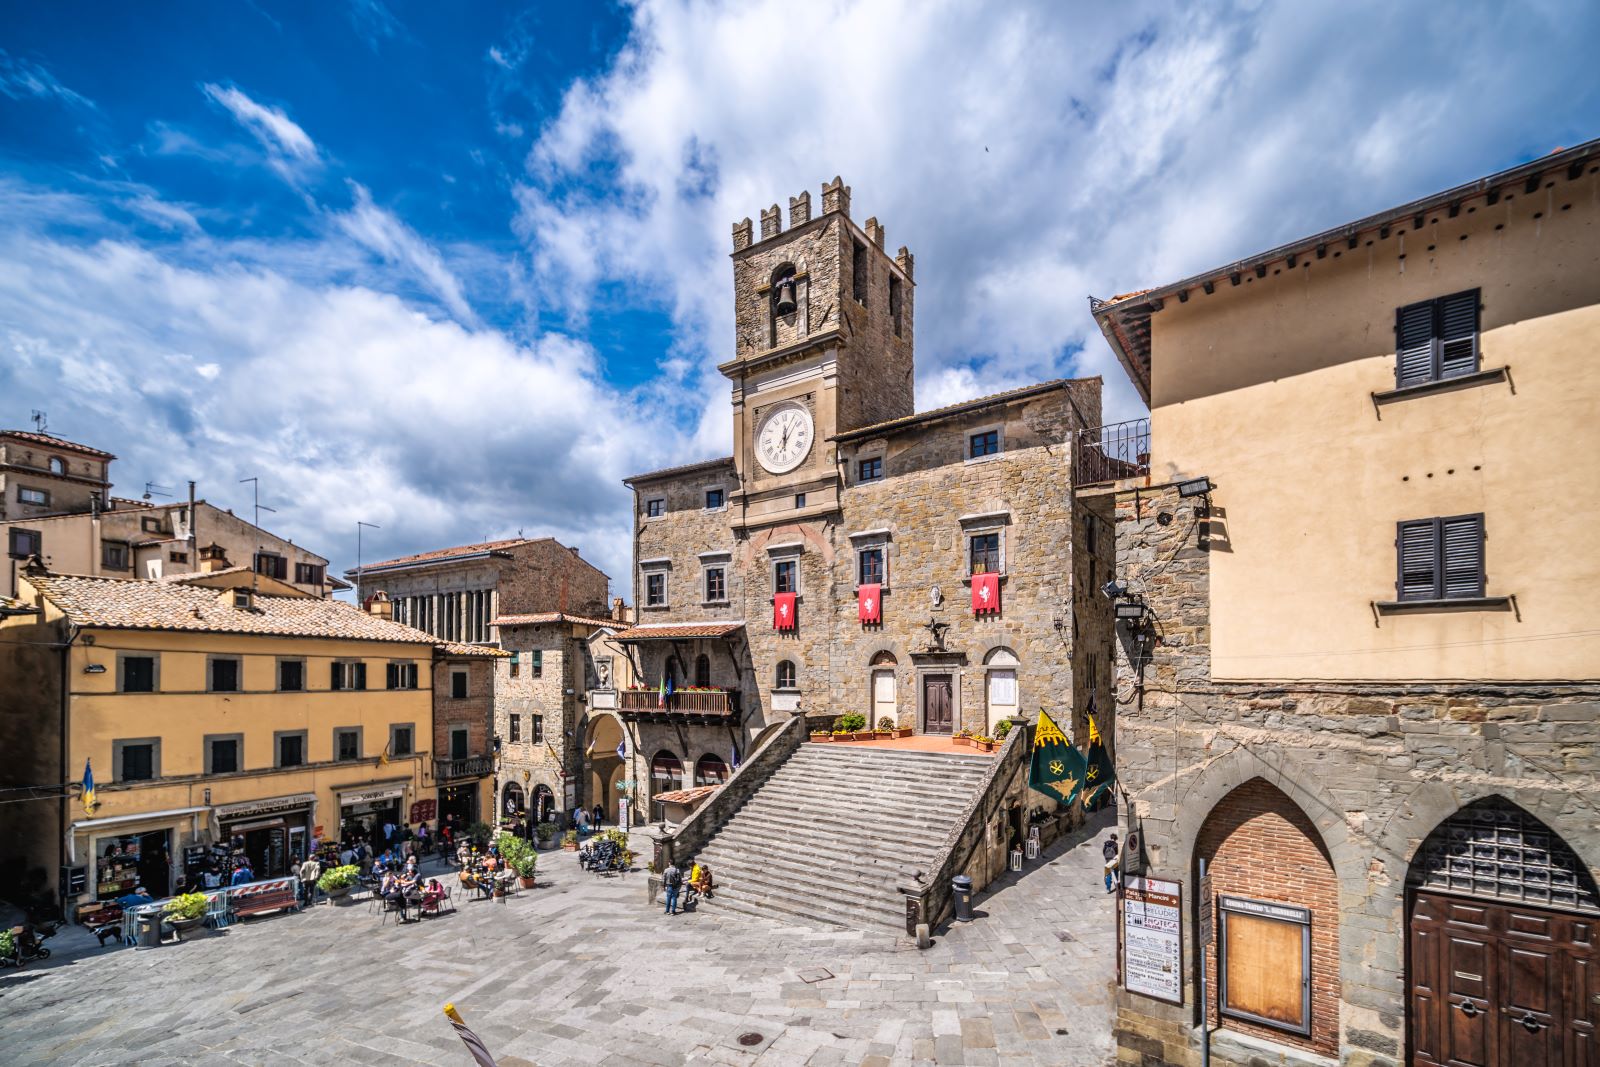 Cortona town centre in Tuscany